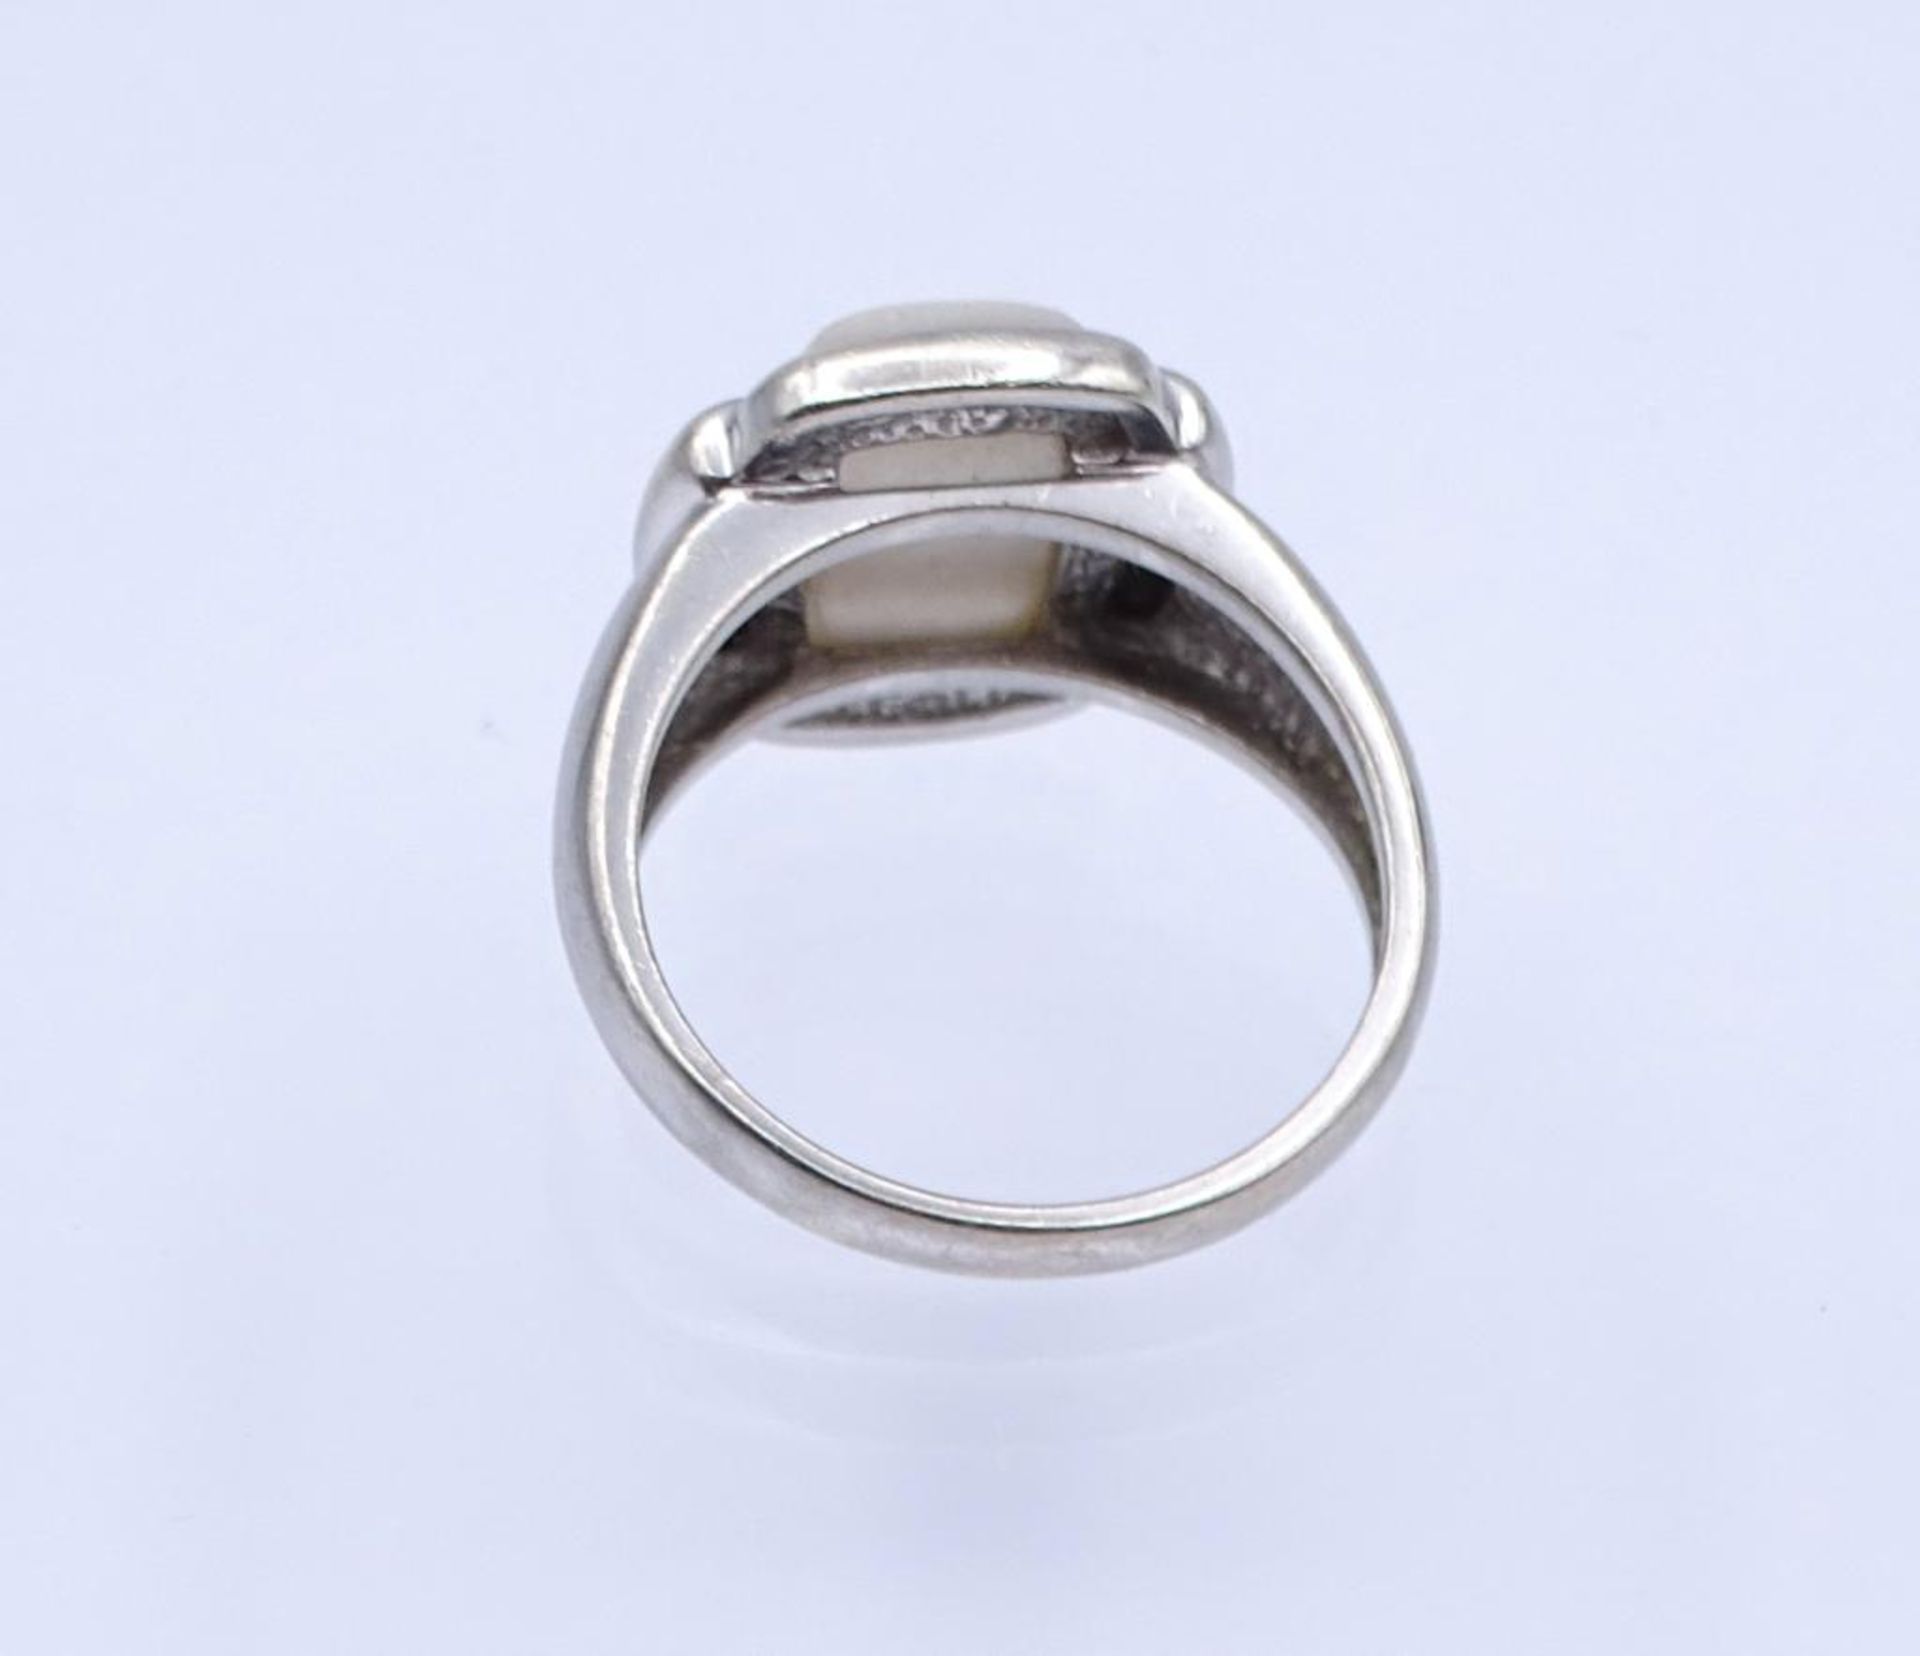 Perlmutt-Silber-Ring,Silber 925/000, 6,6gr., RG 59- - -22.61 % buyer's premium on the hammer - Bild 3 aus 3